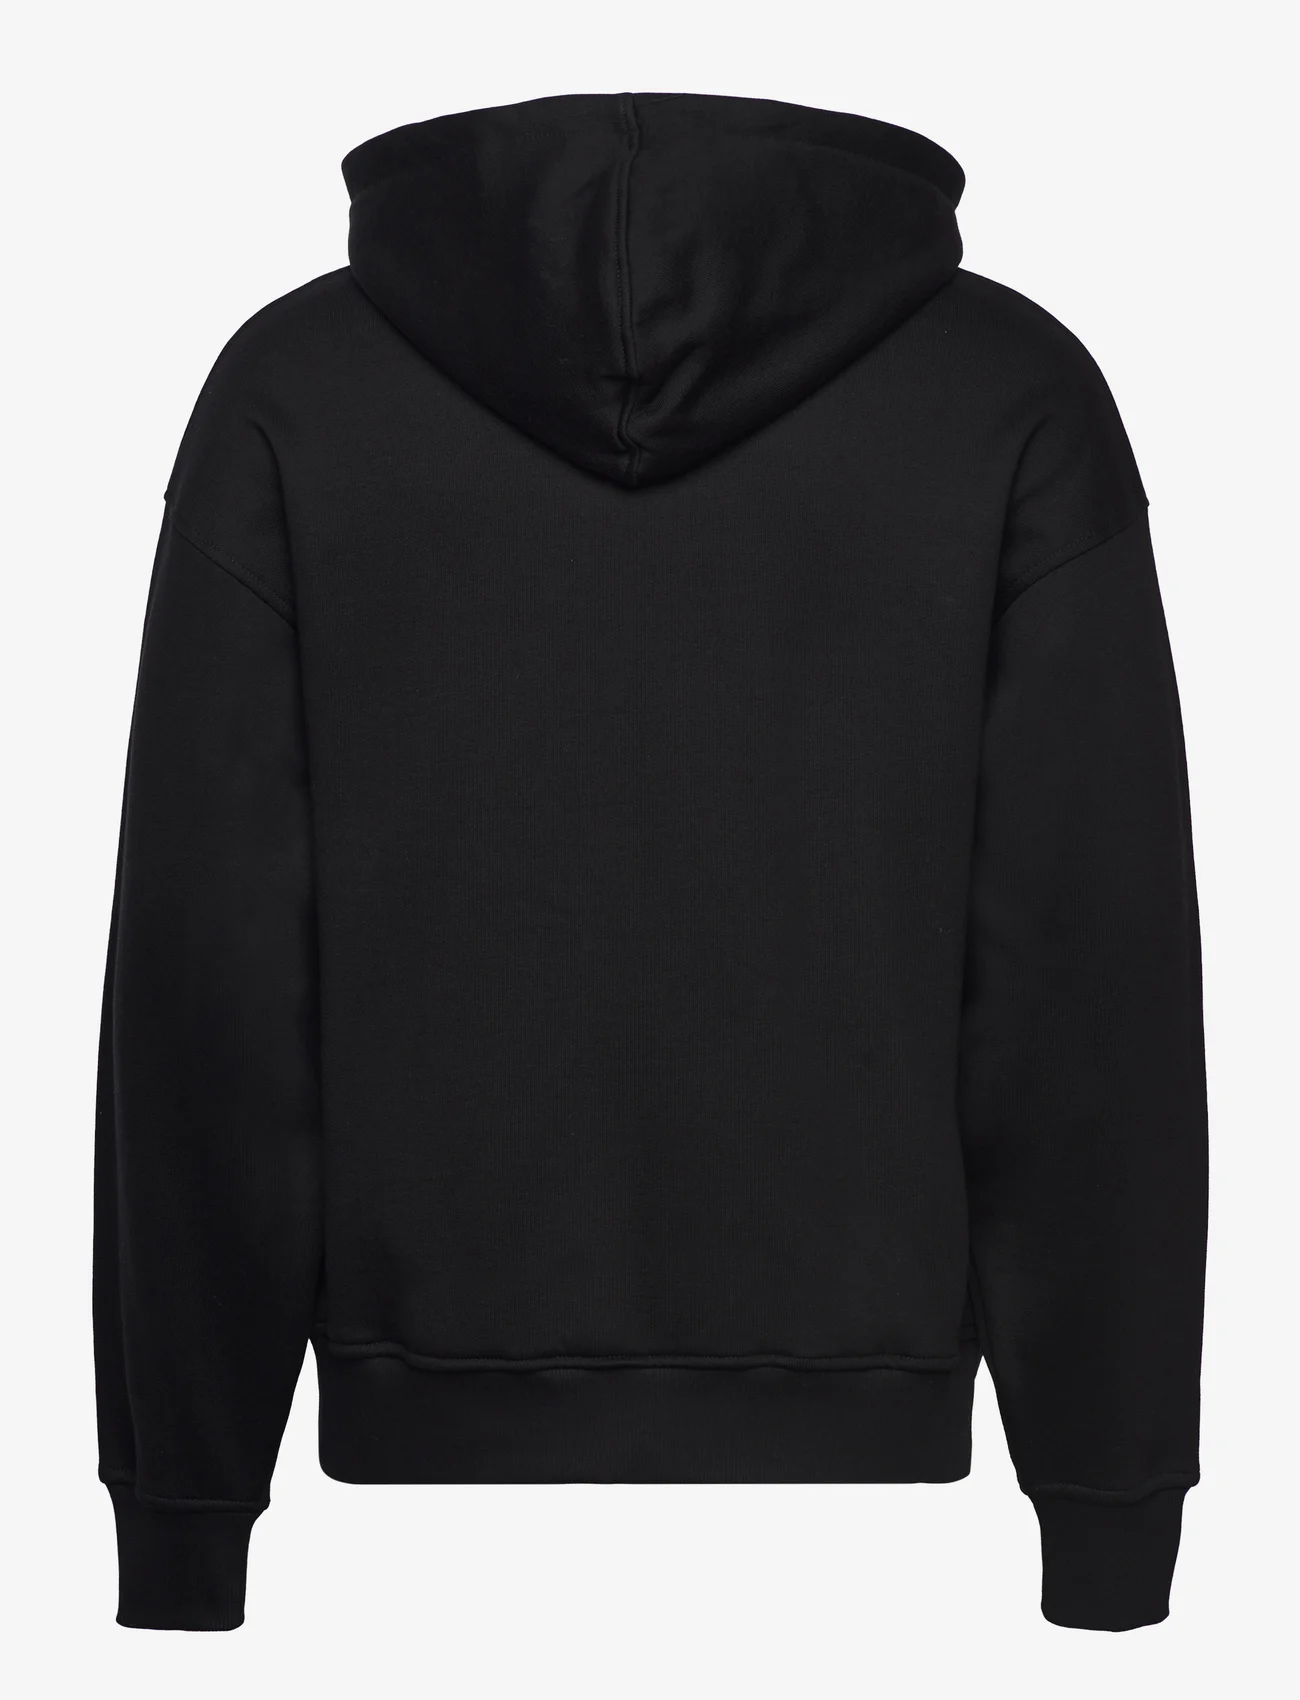 Daily Paper - ezar zip hoodie - hoodies - black - 1